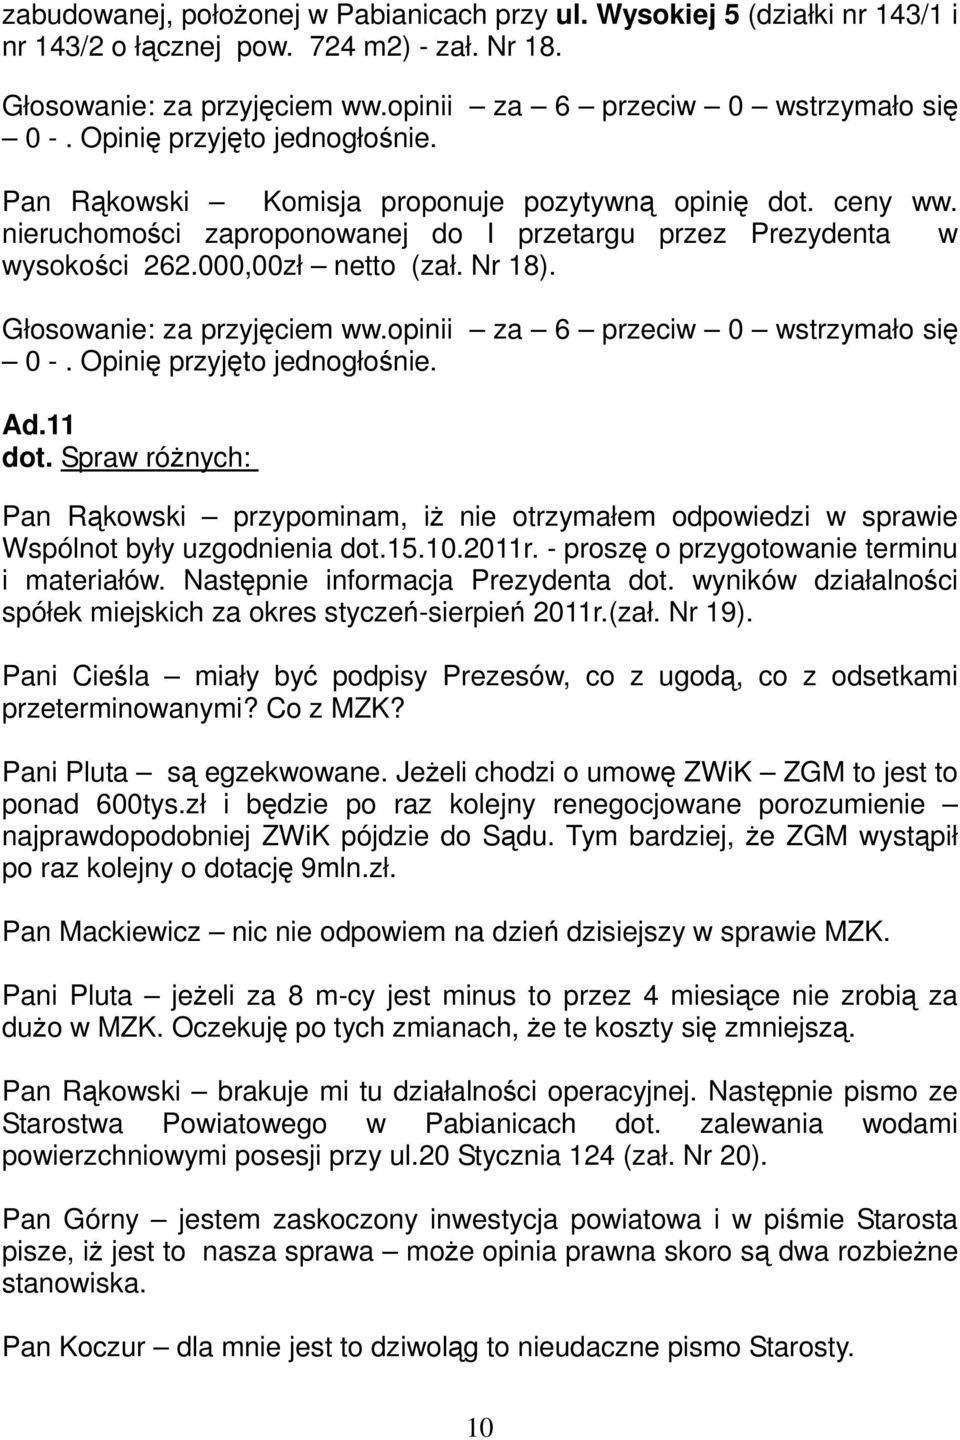 Spraw różnych: Pan Rąkowski przypominam, iż nie otrzymałem odpowiedzi w sprawie Wspólnot były uzgodnienia dot.15.10.2011r. - proszę o przygotowanie terminu i materiałów.